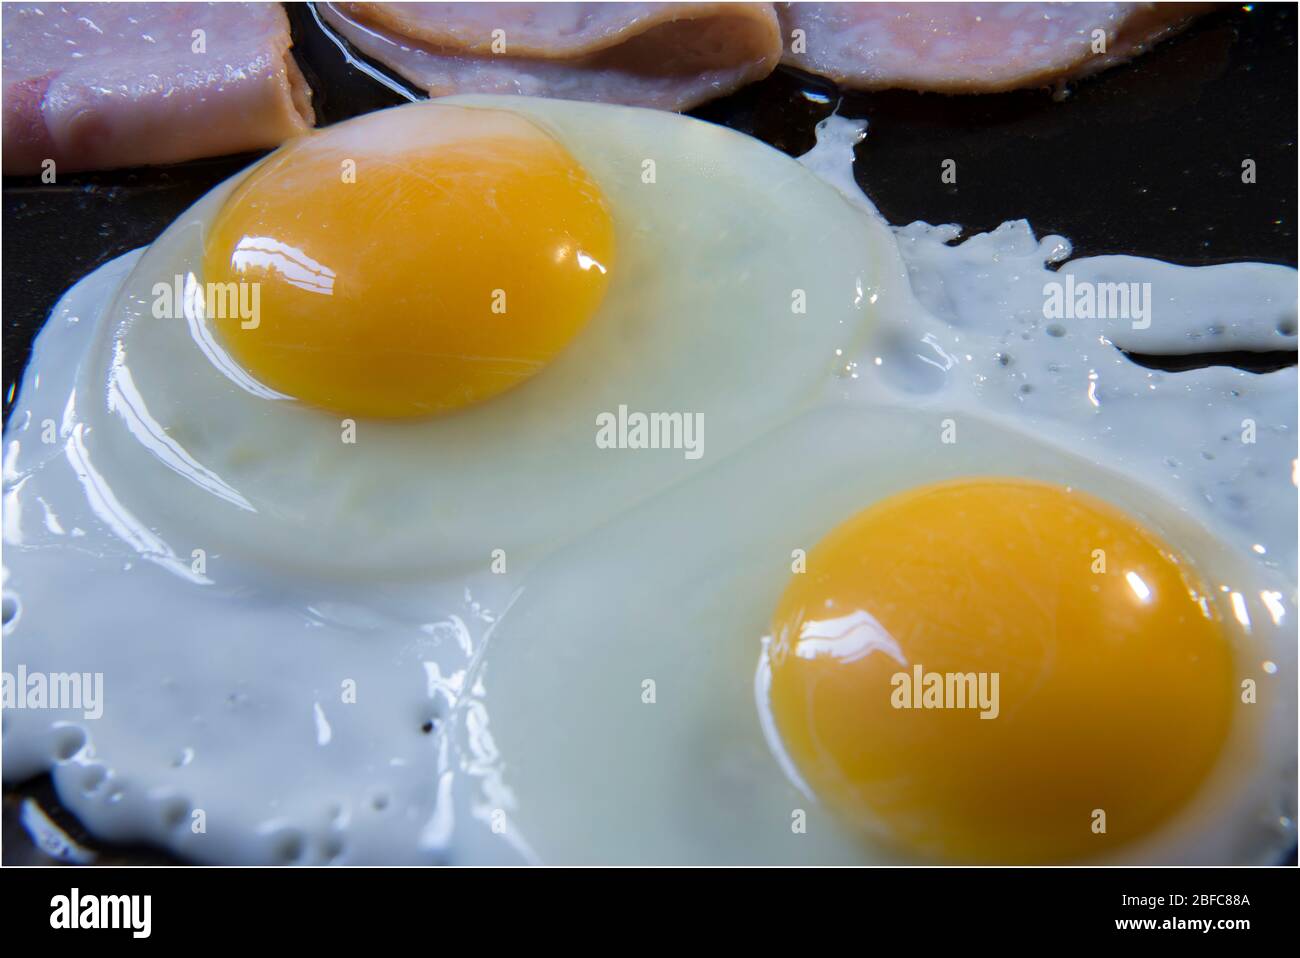 Gros plan ou macro-photographie de la préparation d'œufs et de jambon trop faciles, sur une casserole de cuisine dans le cadre d'un petit déjeuner classique. Cuisson des œufs sur une poêle Banque D'Images